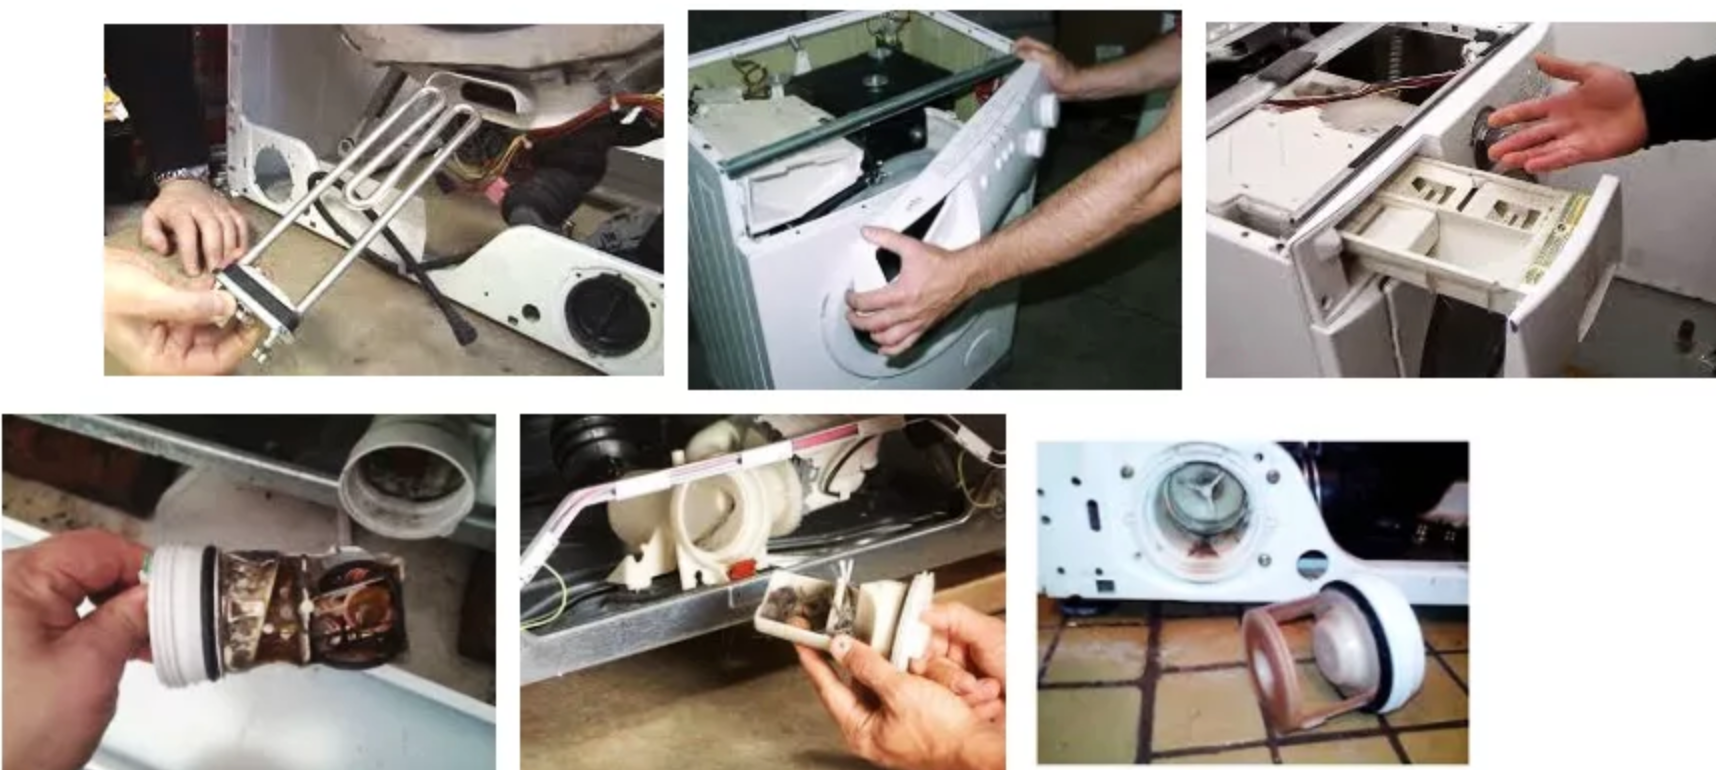 Ремонт стиральной машины-автомат своими руками